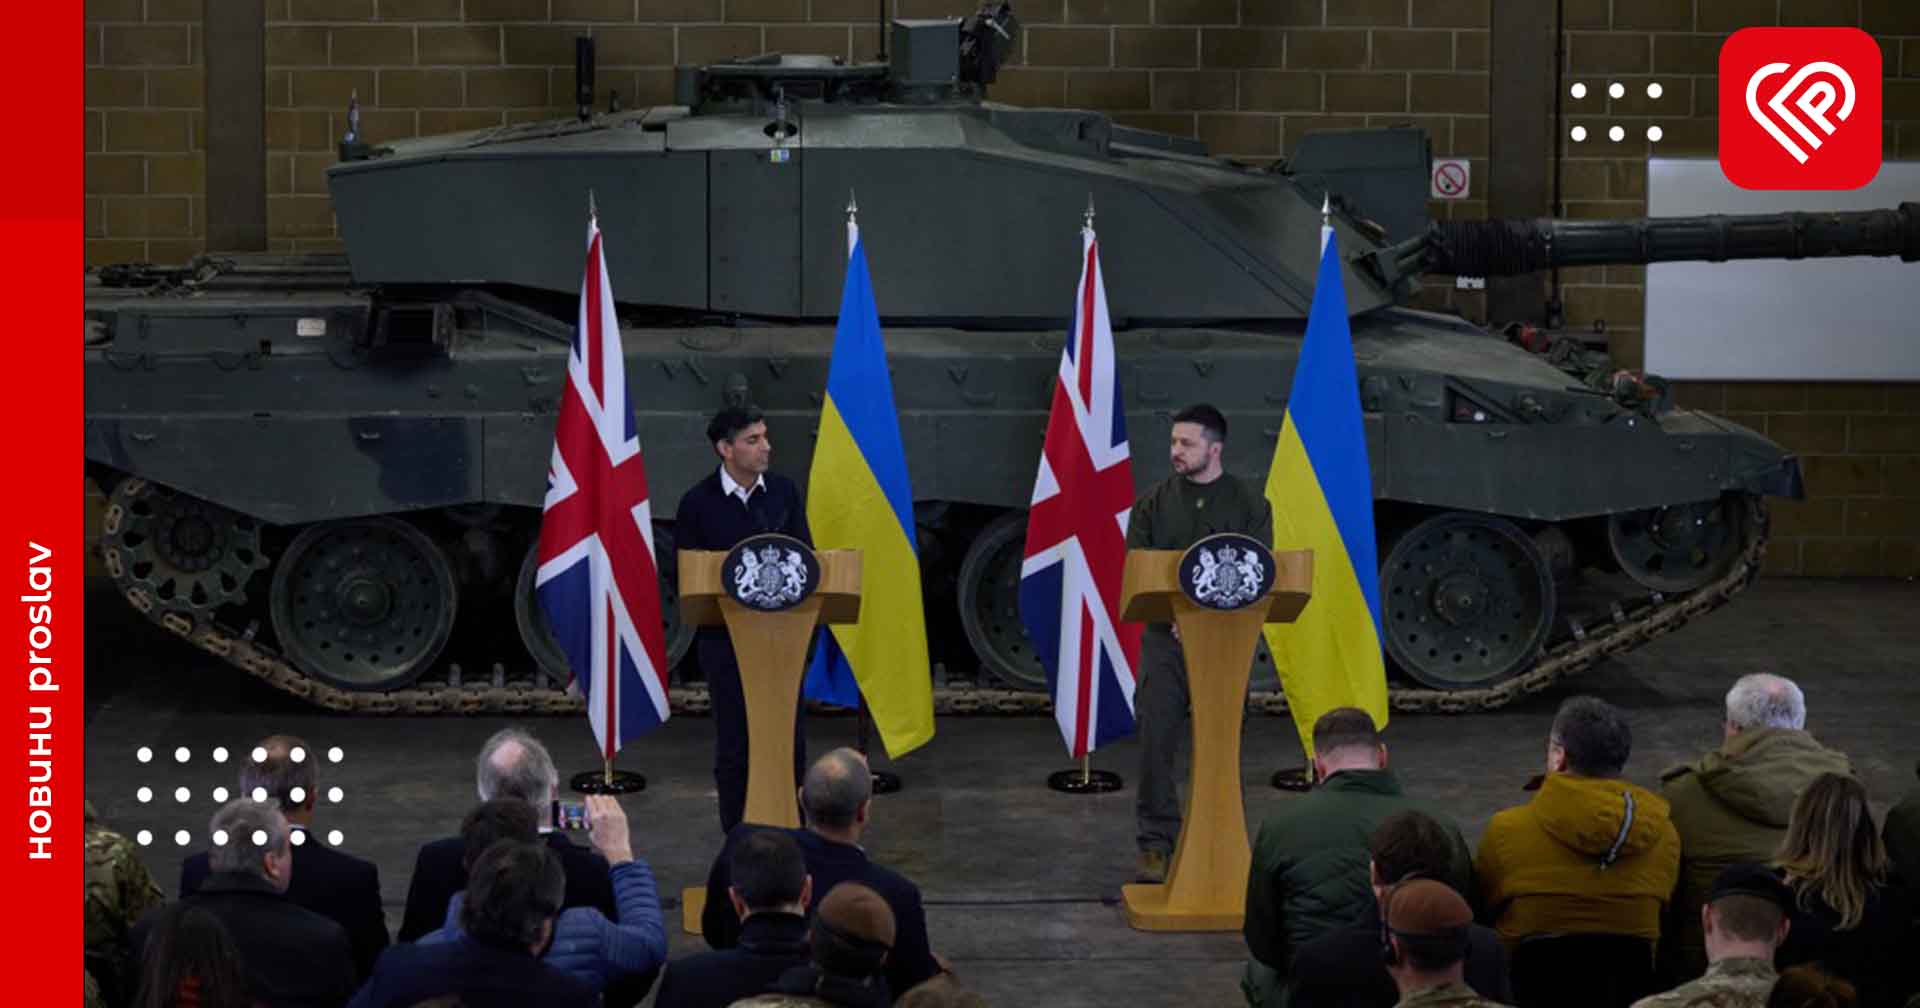 Допомога Україні від партнерів: Велика Британія повідомила про виділення найбільшого оборонного пакета, США на черзі